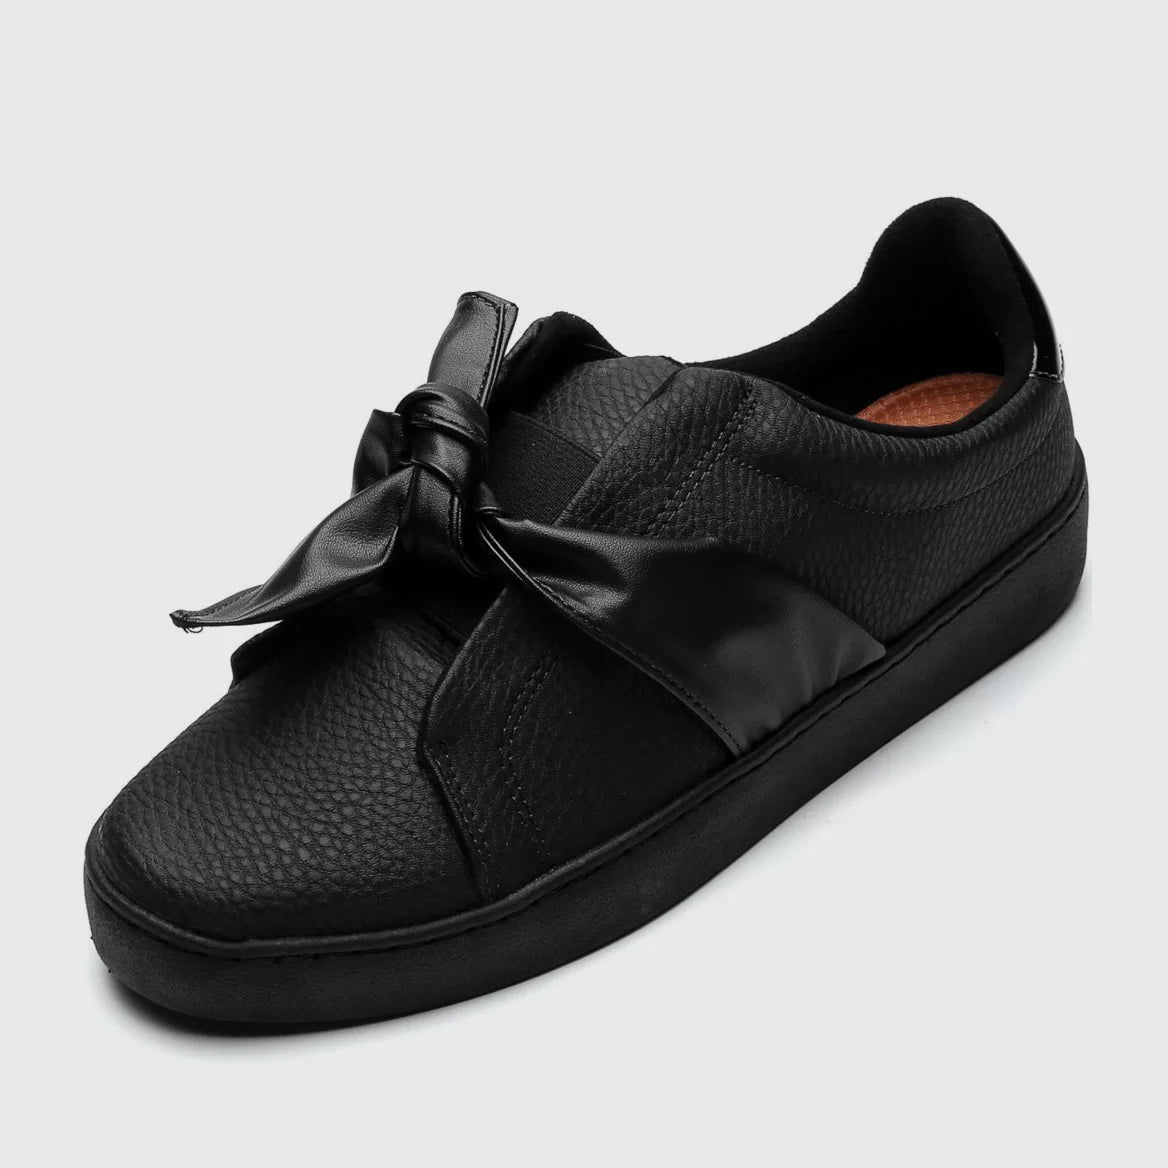 Vizzano 1214-298 Bowtie Sneaker in Black Napa